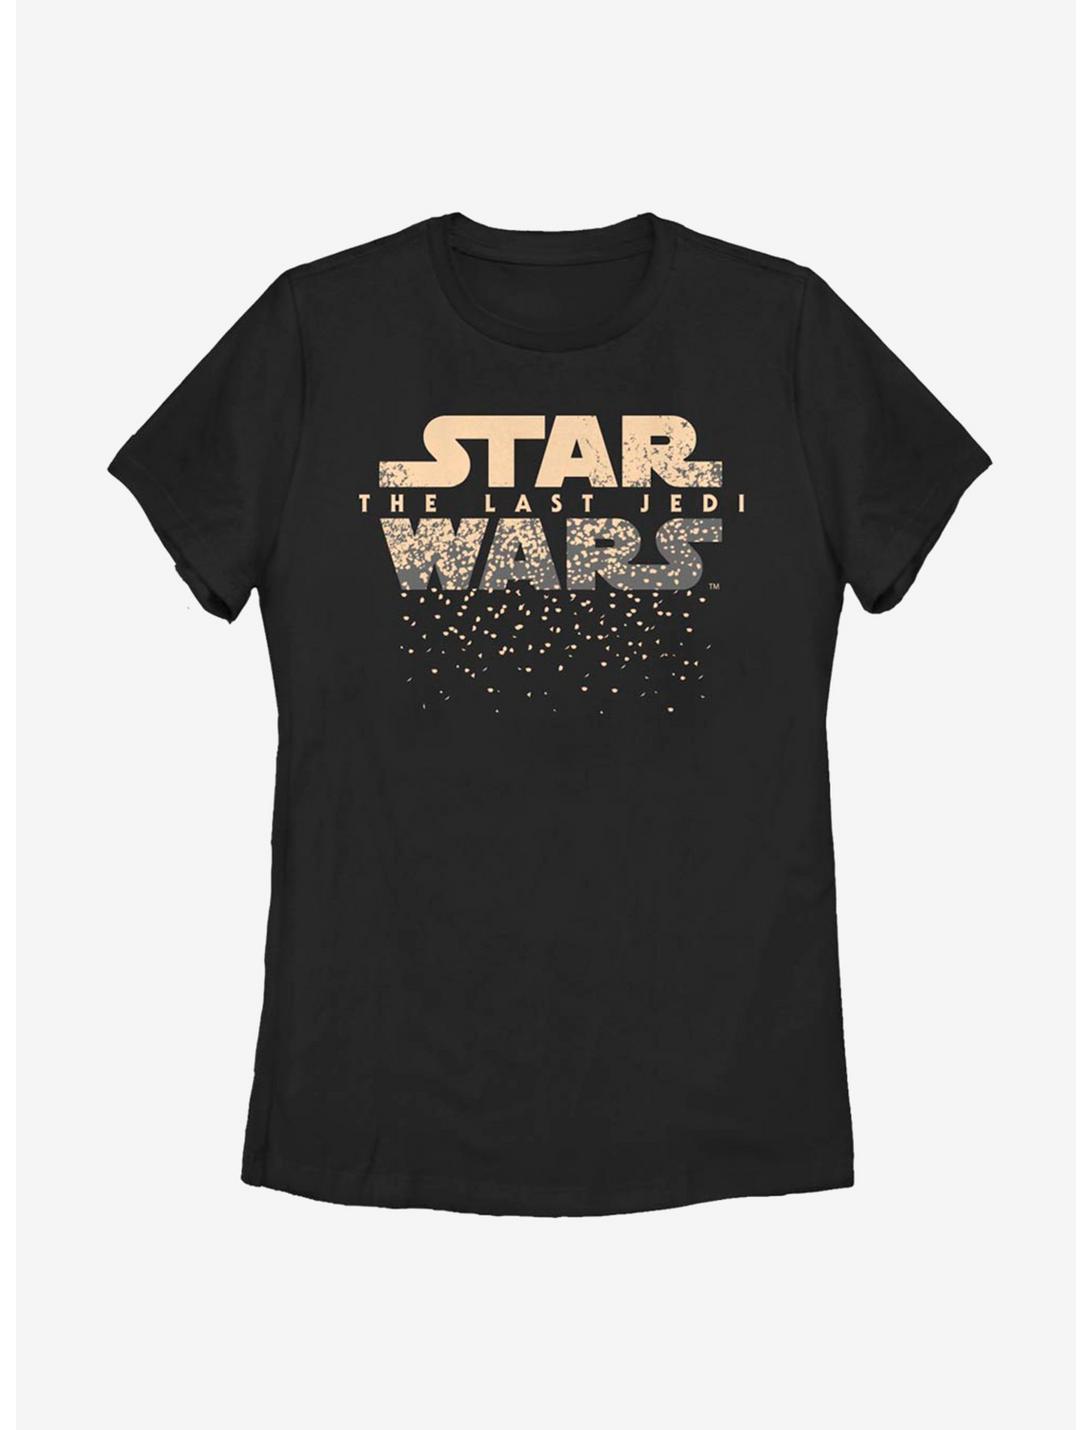 Star Wars Episode VIII: The Last Jedi Last Jedi Fall Womens T-Shirt, BLACK, hi-res